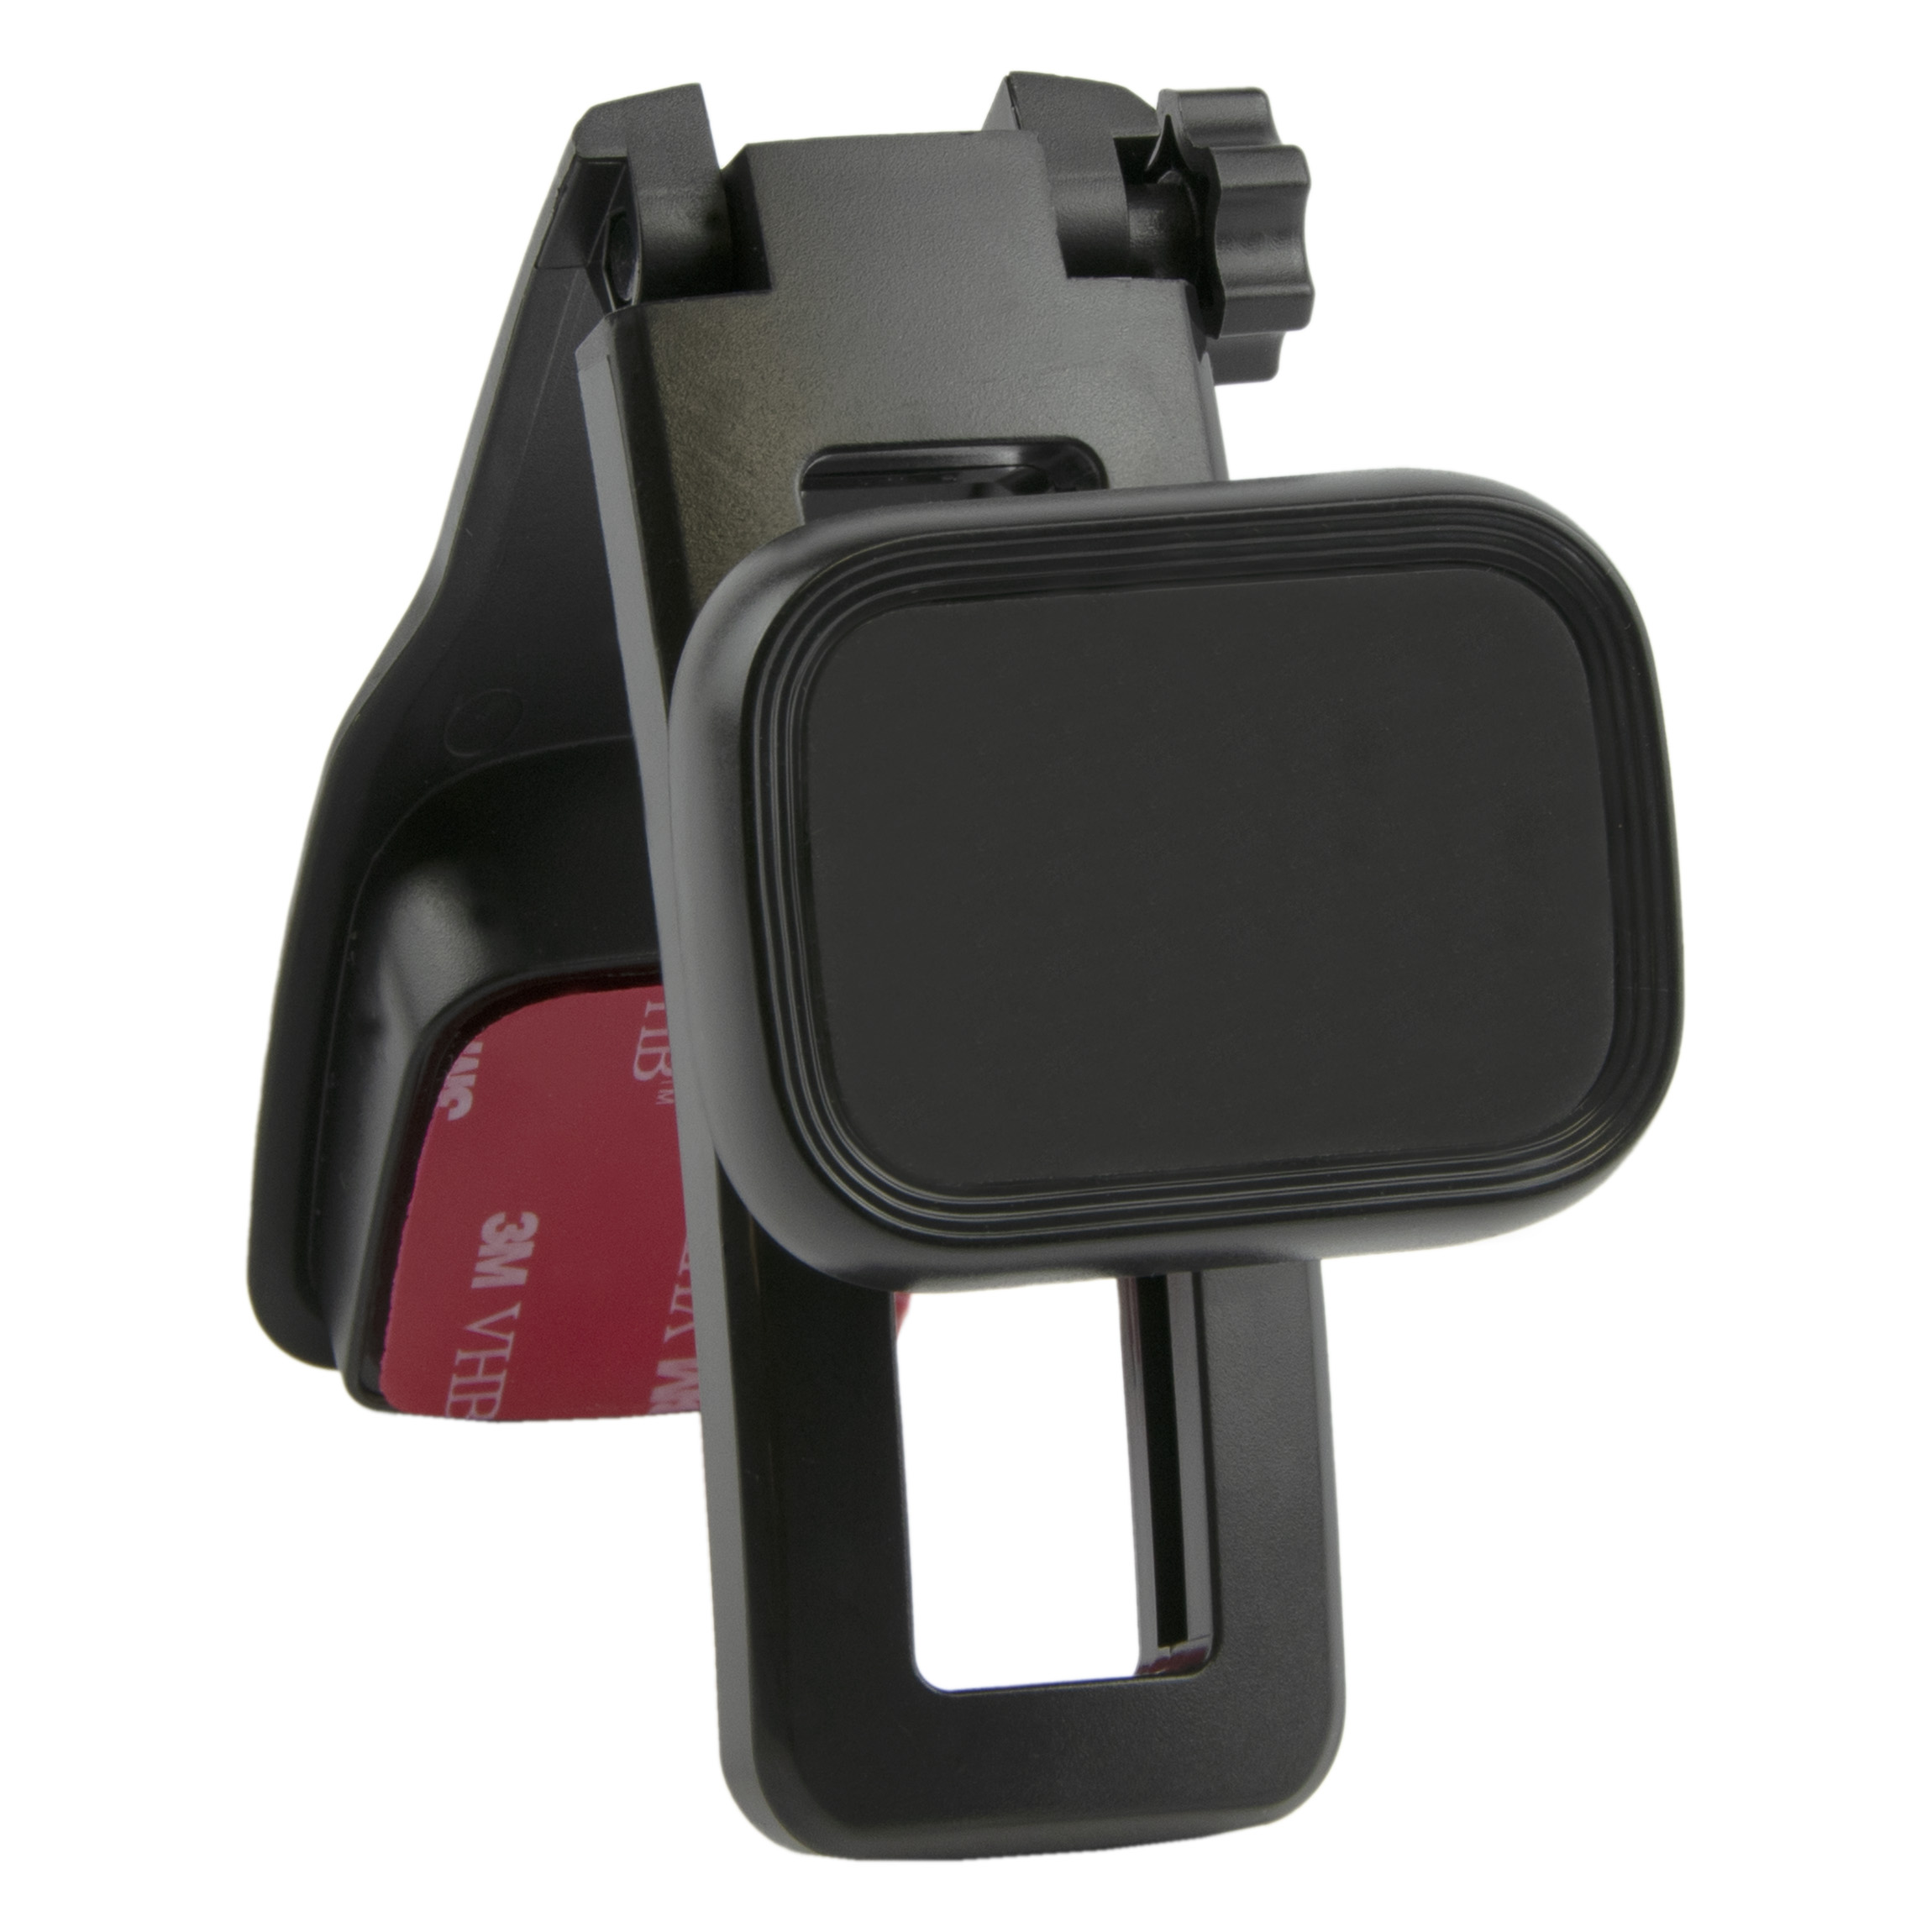 Design Car Mount Hanging Adjustable Phone Holder with Magnetic Mount